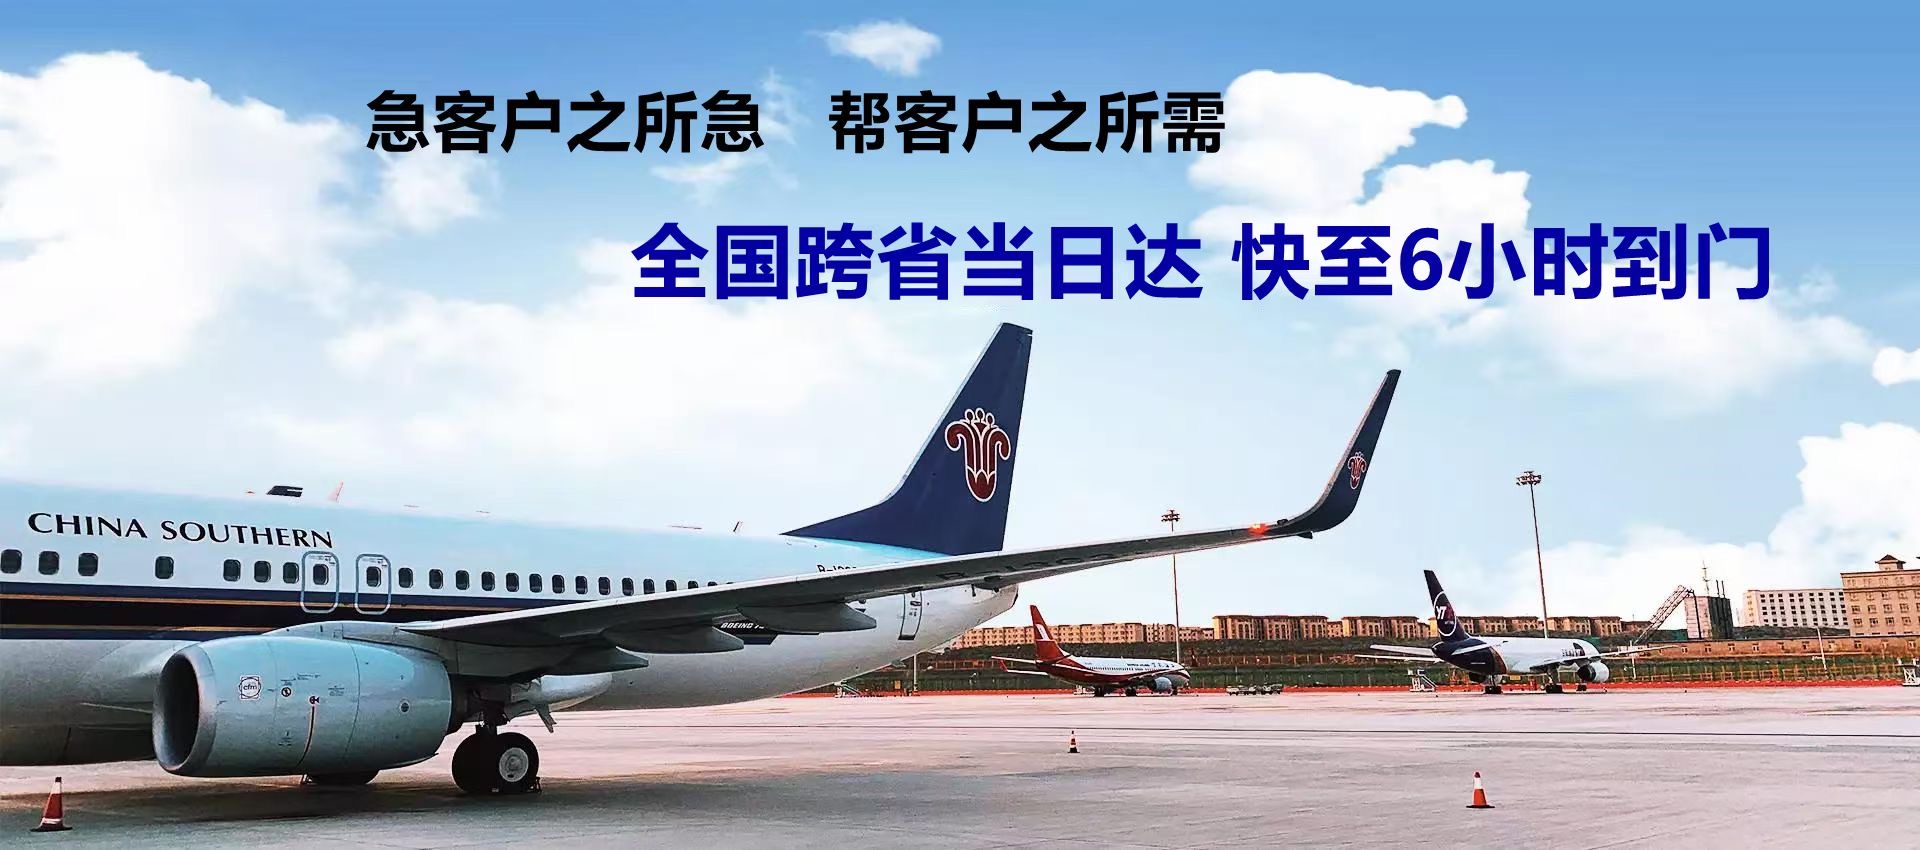 台湾-成都航空货运哪些货物适合航空运输-限时达空运物流公司